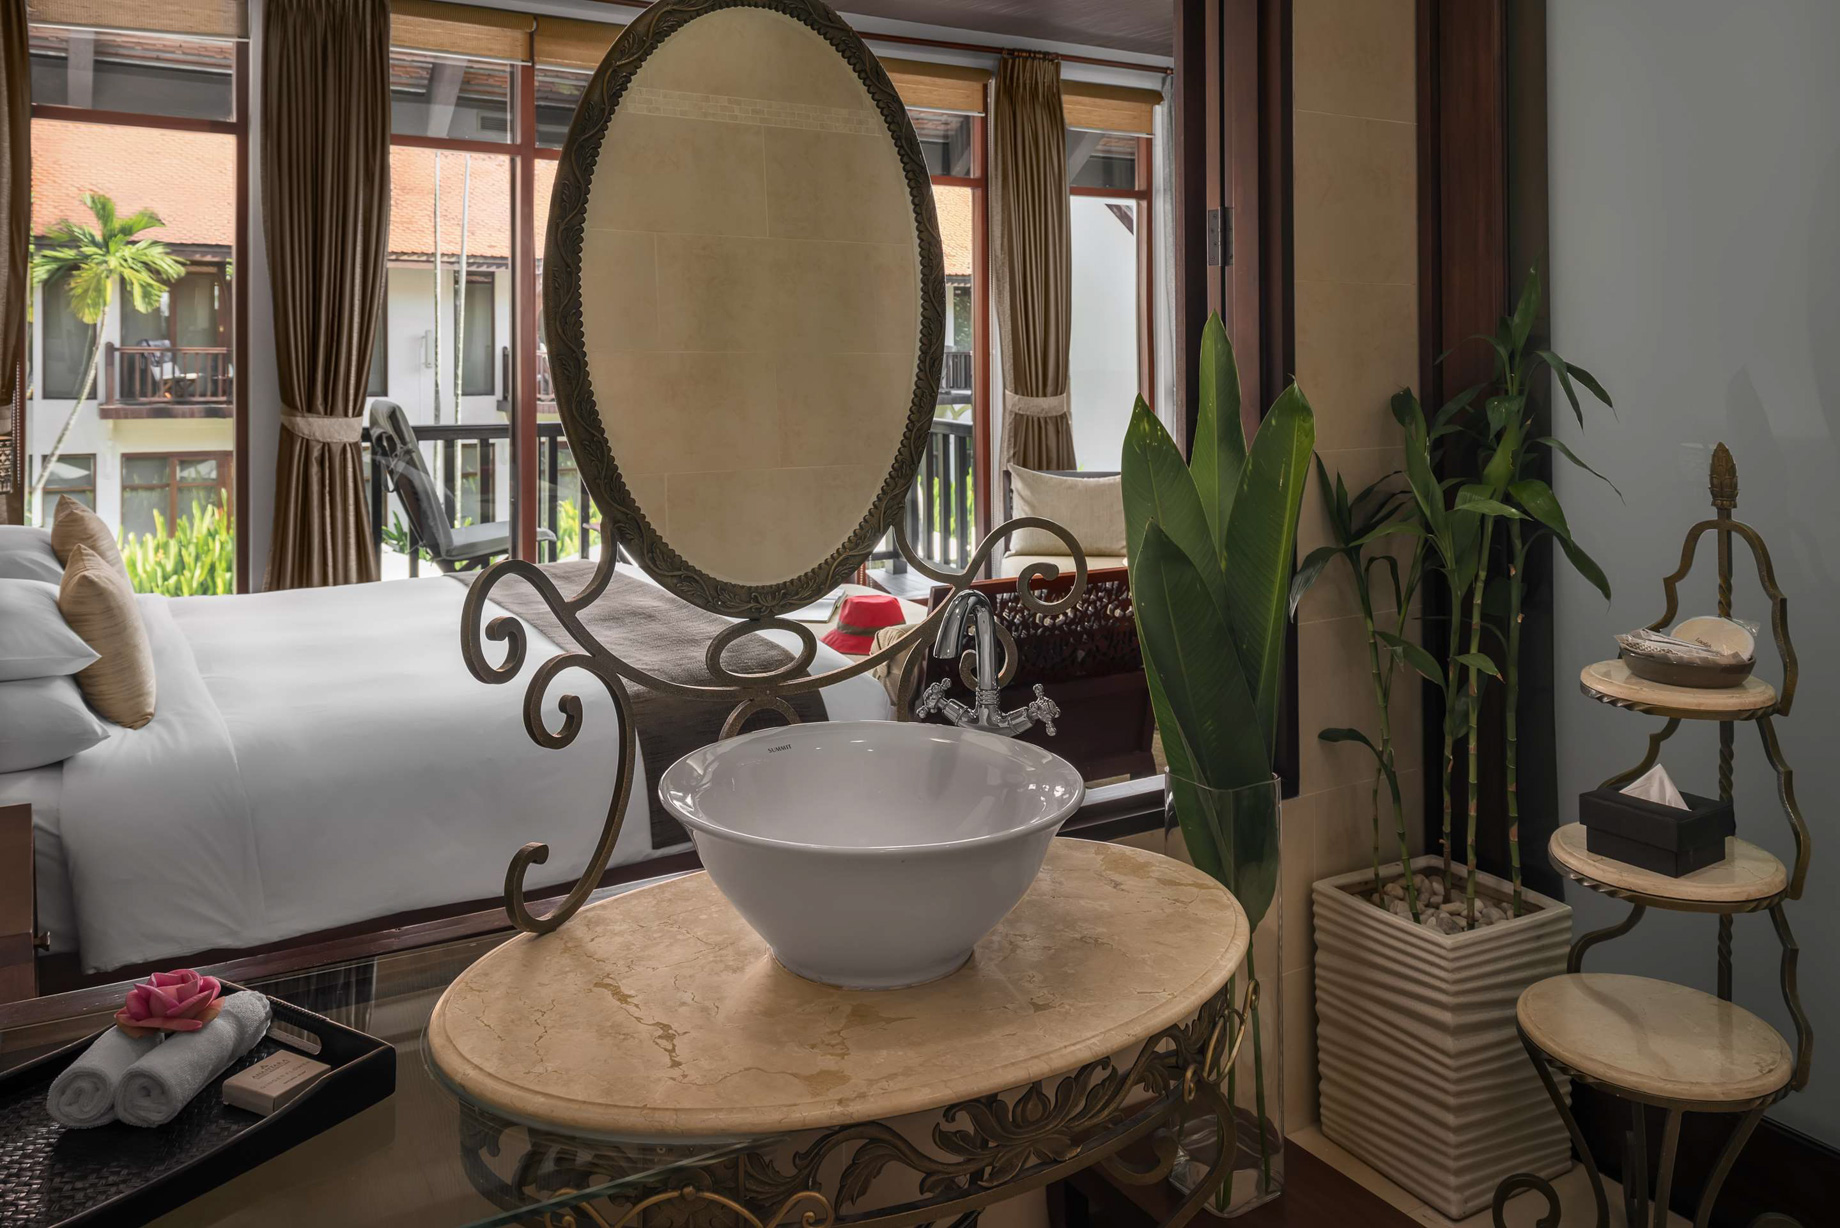 Anantara Angkor Resort – Siem Reap, Cambodia – Guest Suite Bathroom